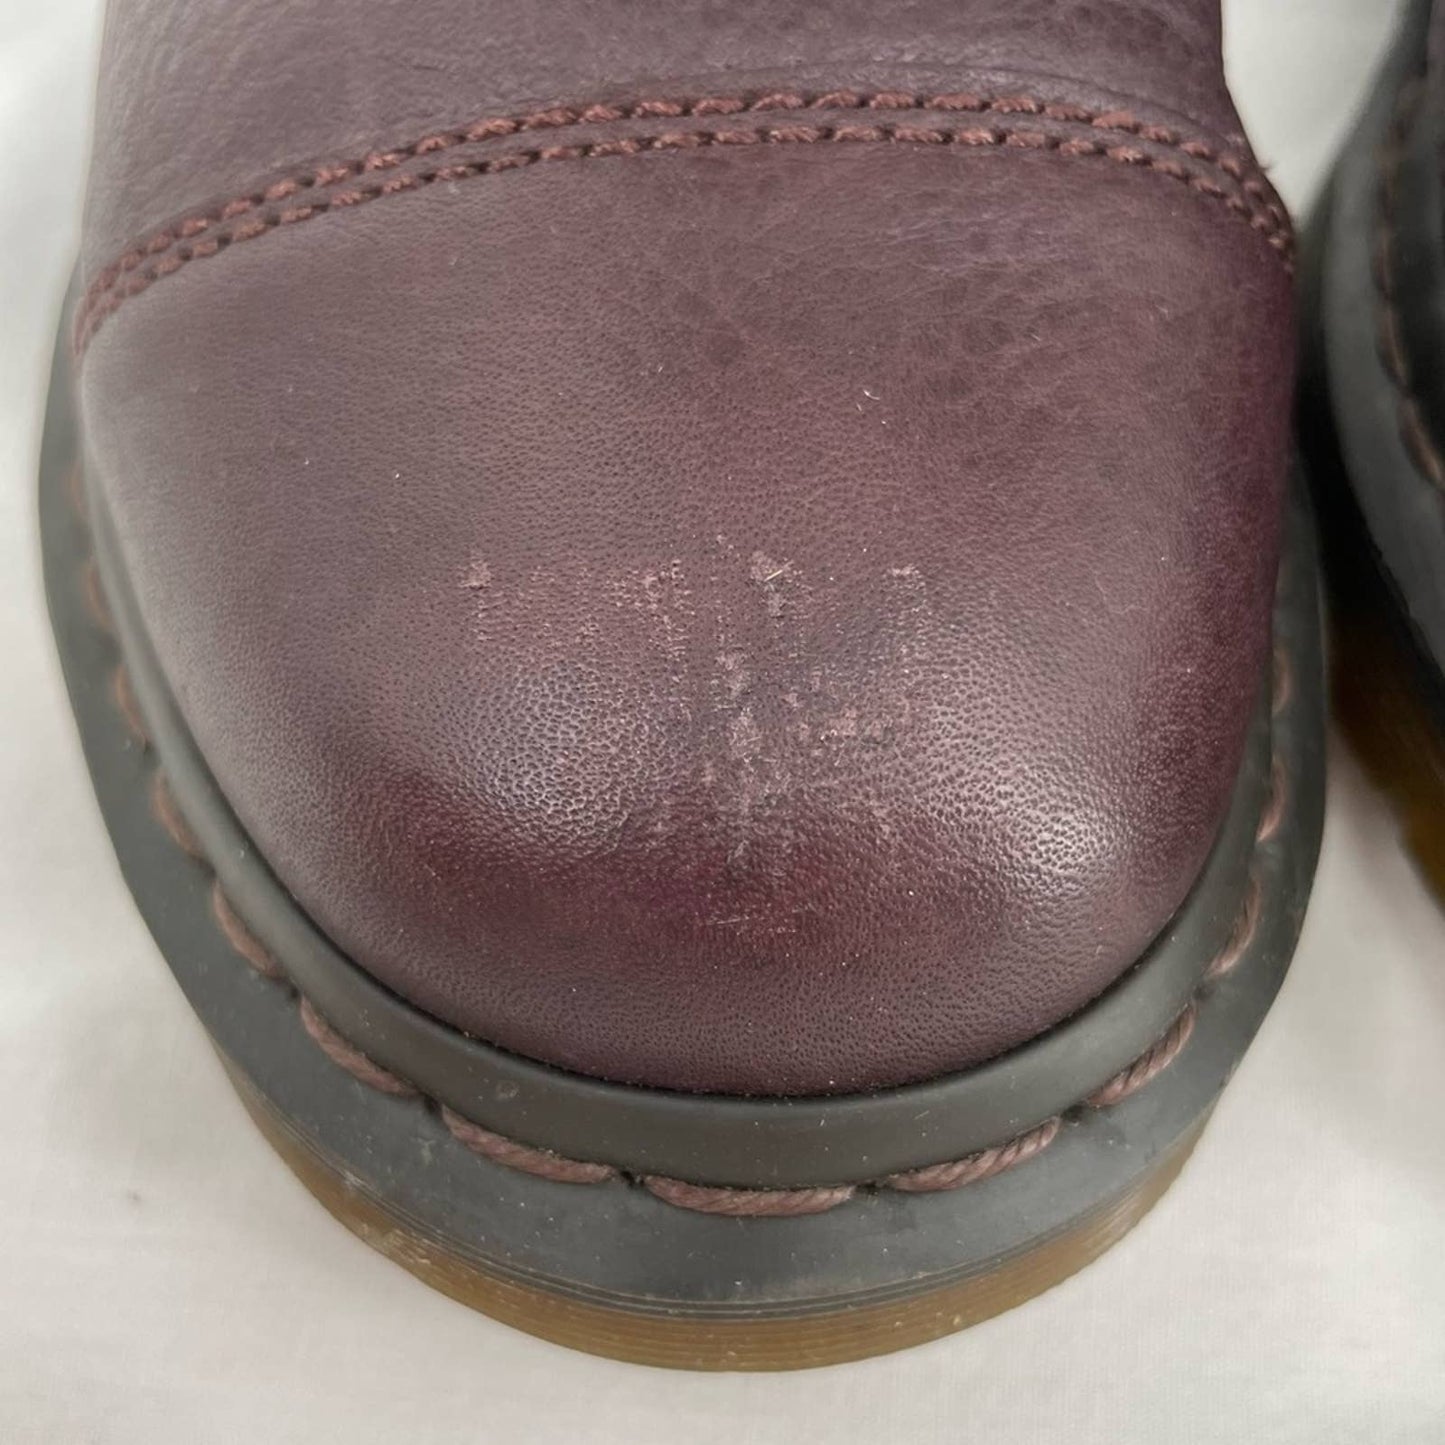 Dr. Martens Aimilie Elk Oxblood Brown Leather Fold Over Union Jack Biker Boots Size 7